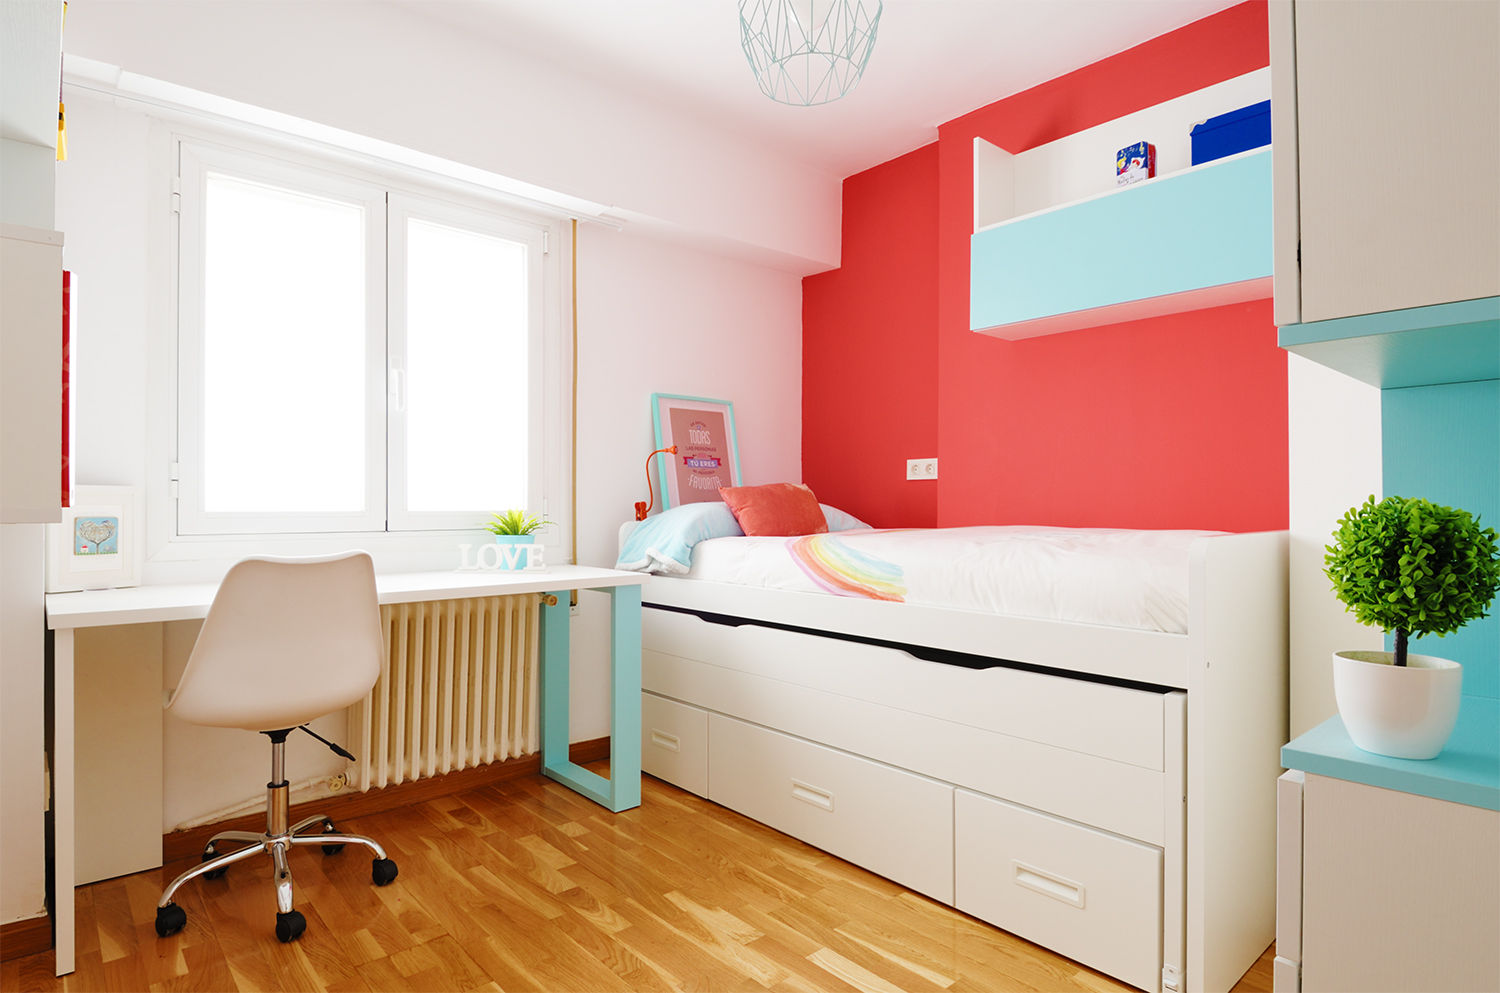 Un dormitorio de una niña de 11 años, Noelia Villalba Interiorista Noelia Villalba Interiorista Nursery/kid’s room